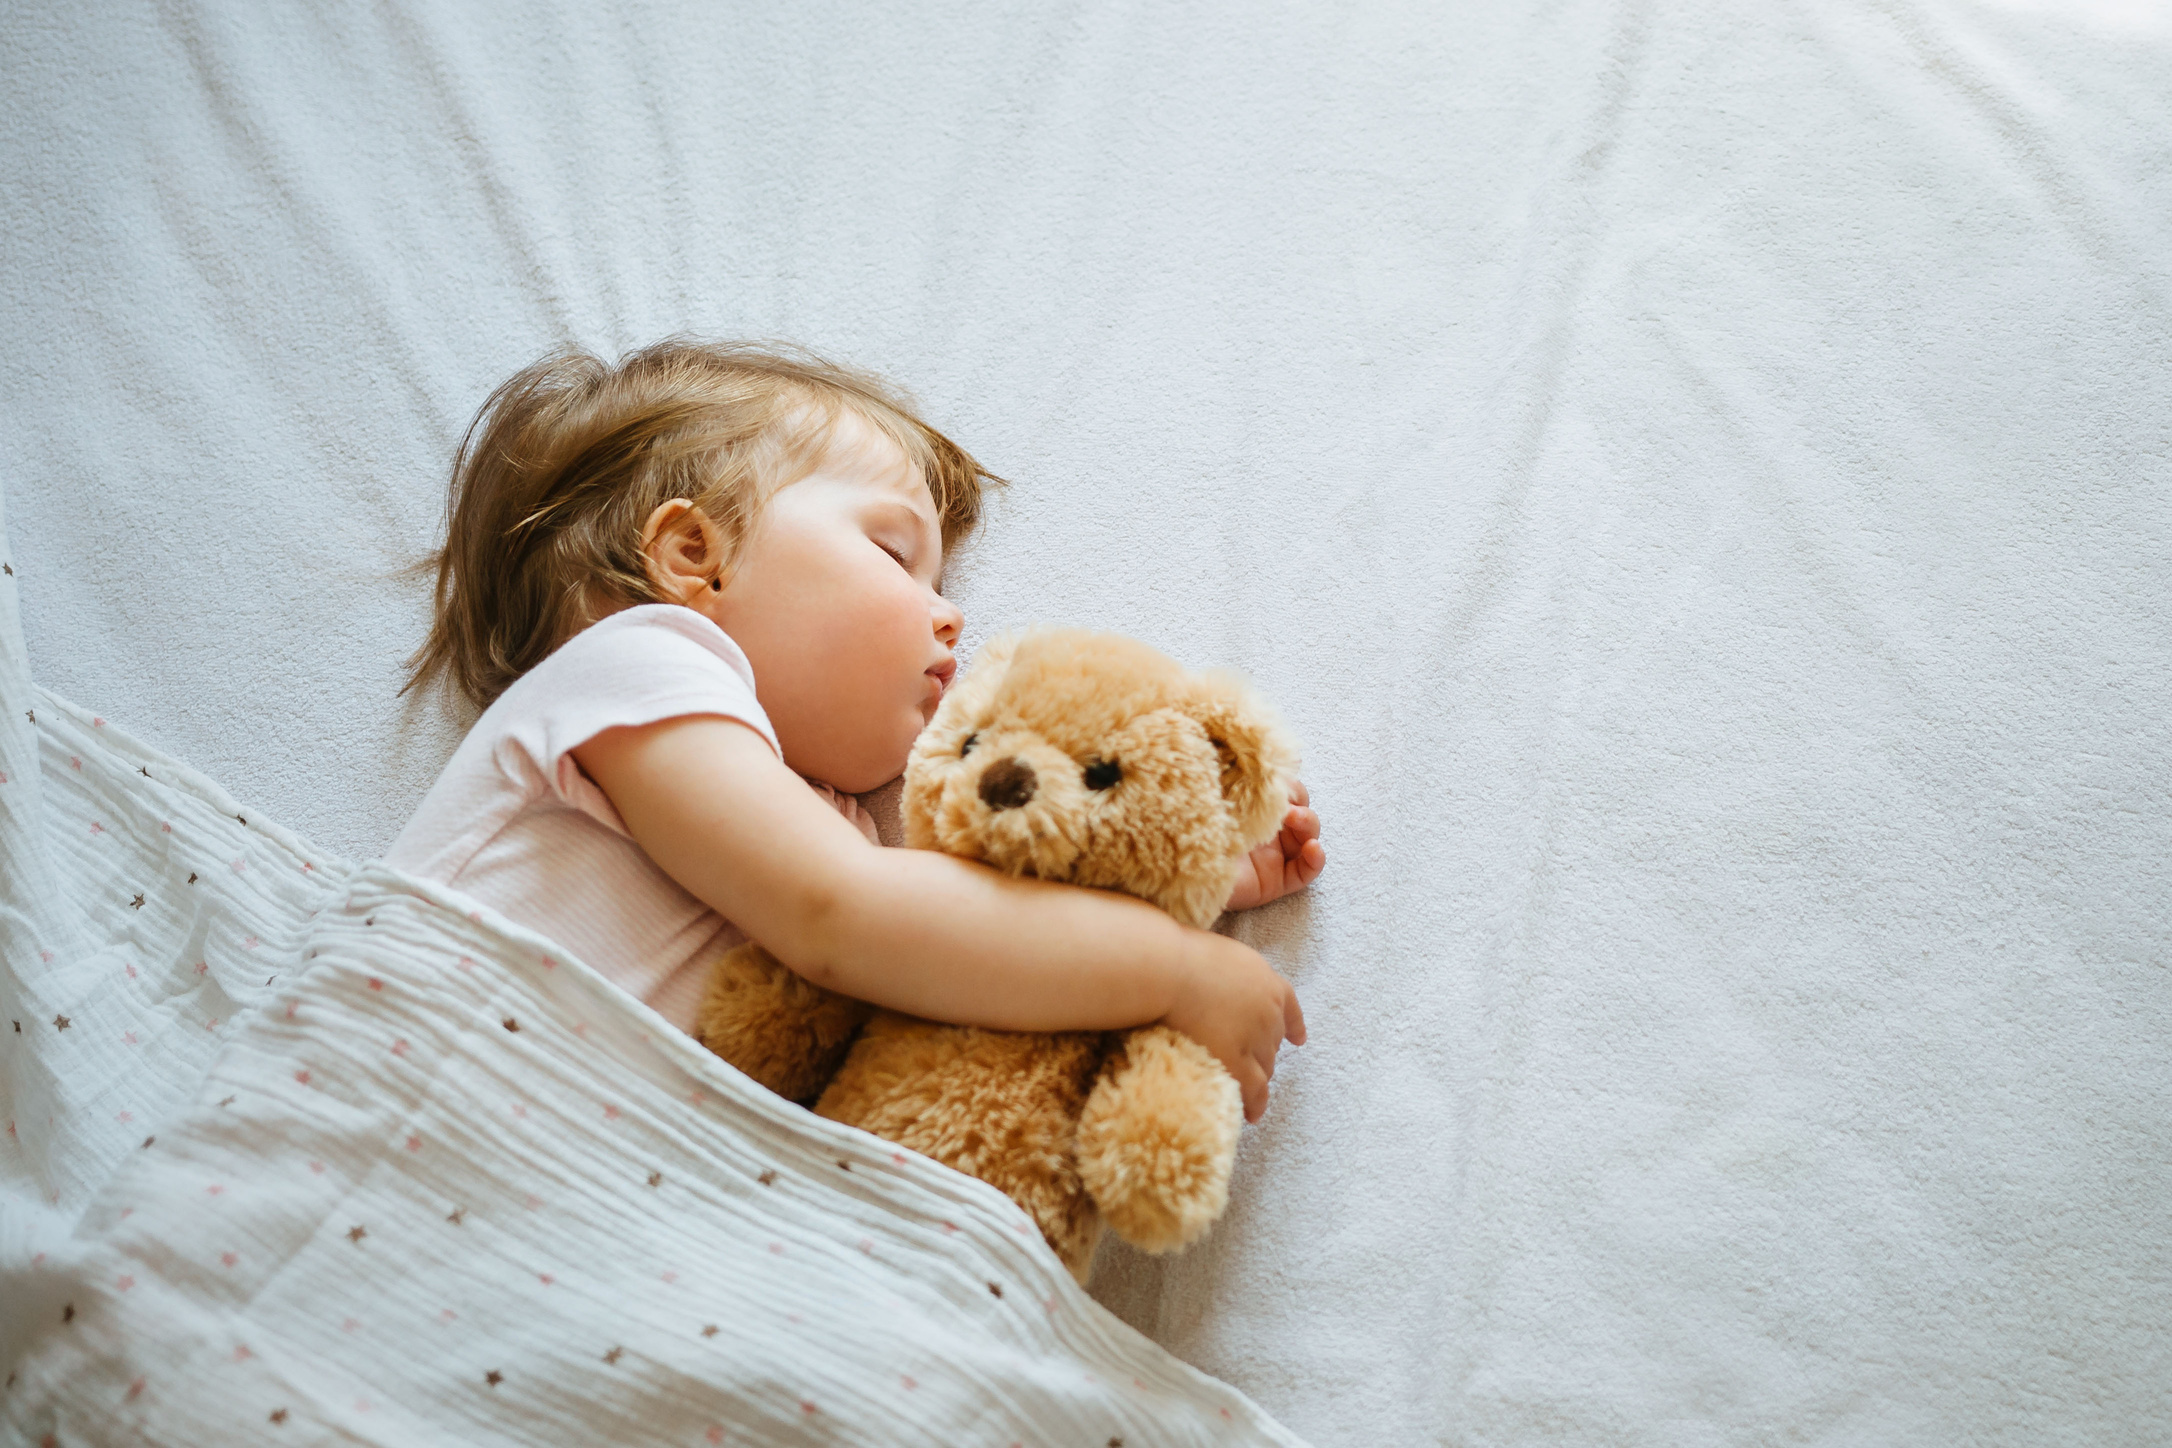 Sleeping Baby Hugging a Teddy Bear